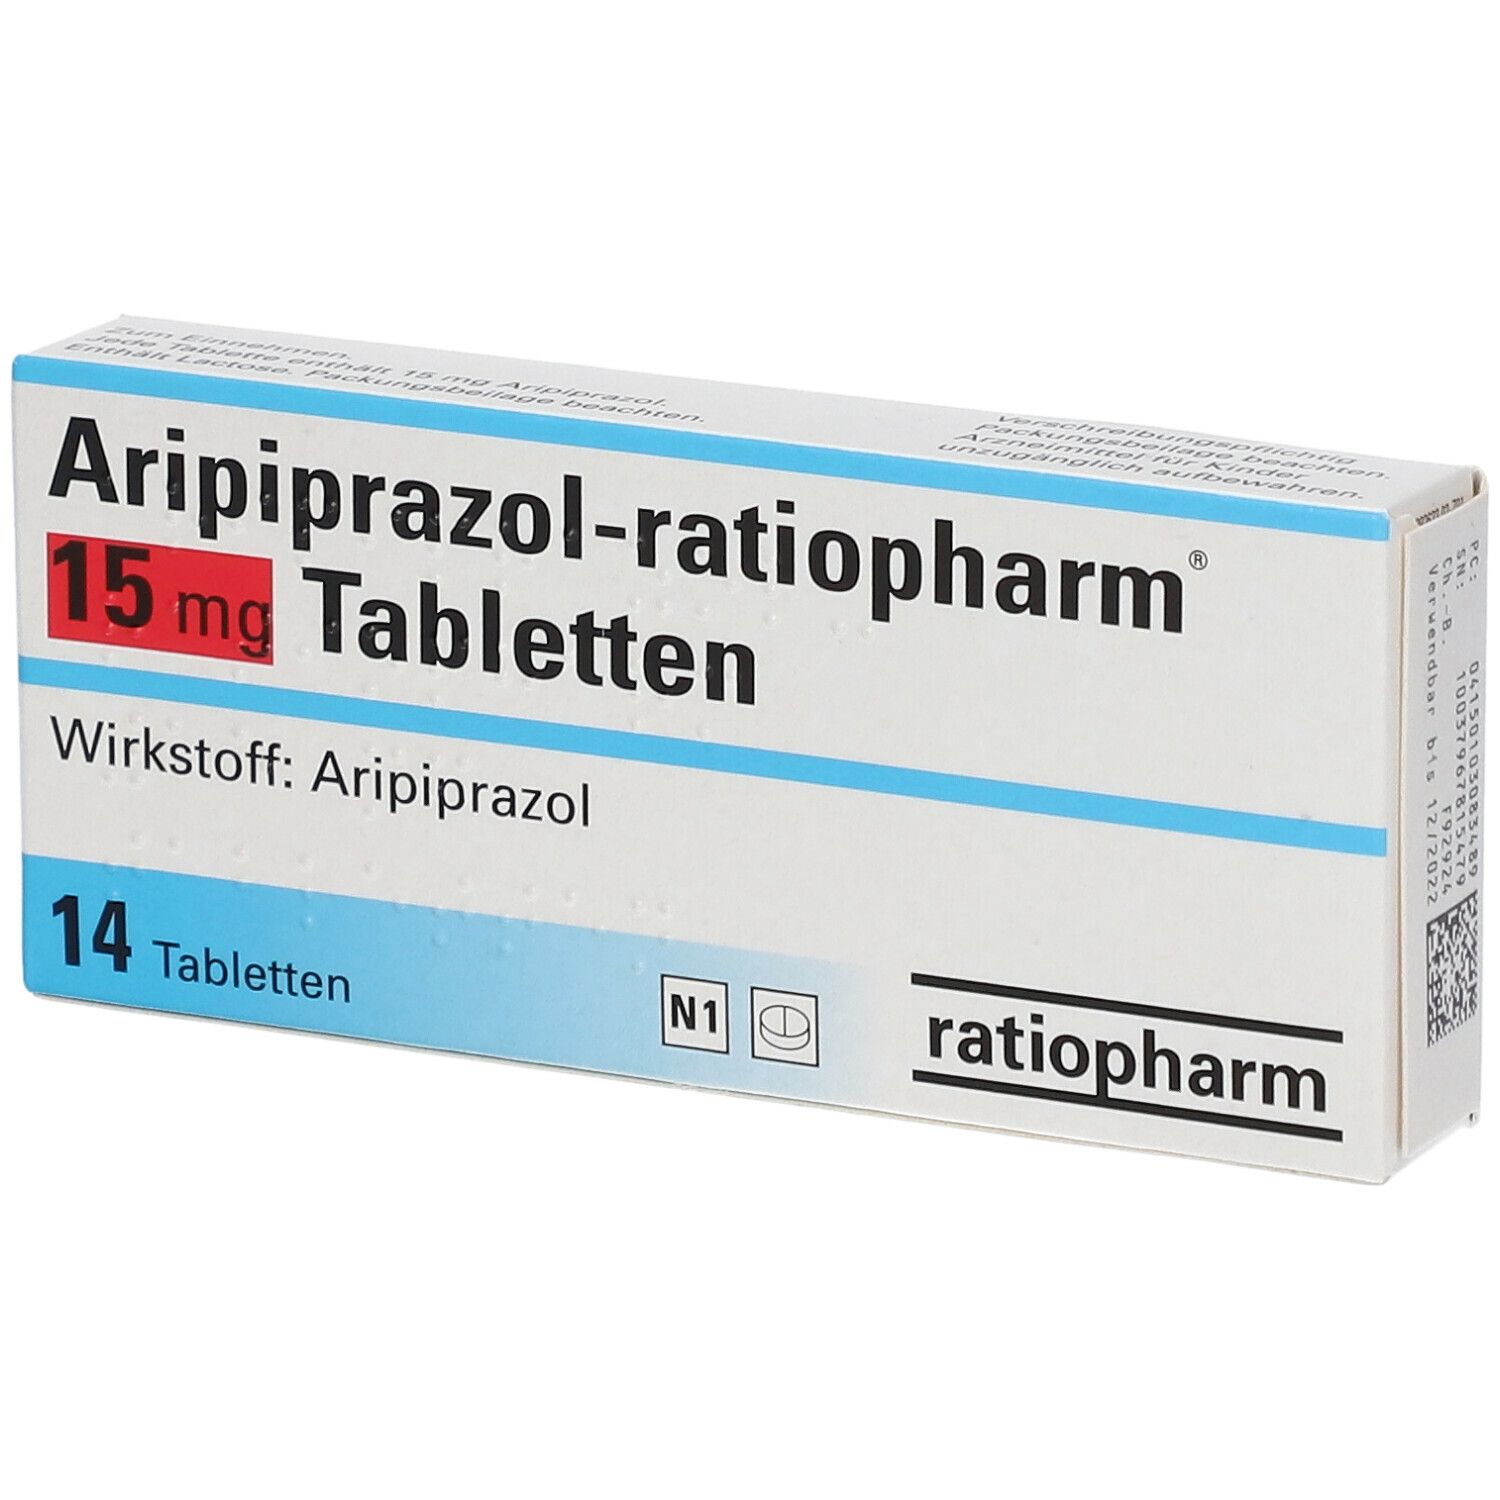 Aripiprazol-ratiopharm® 15 mg